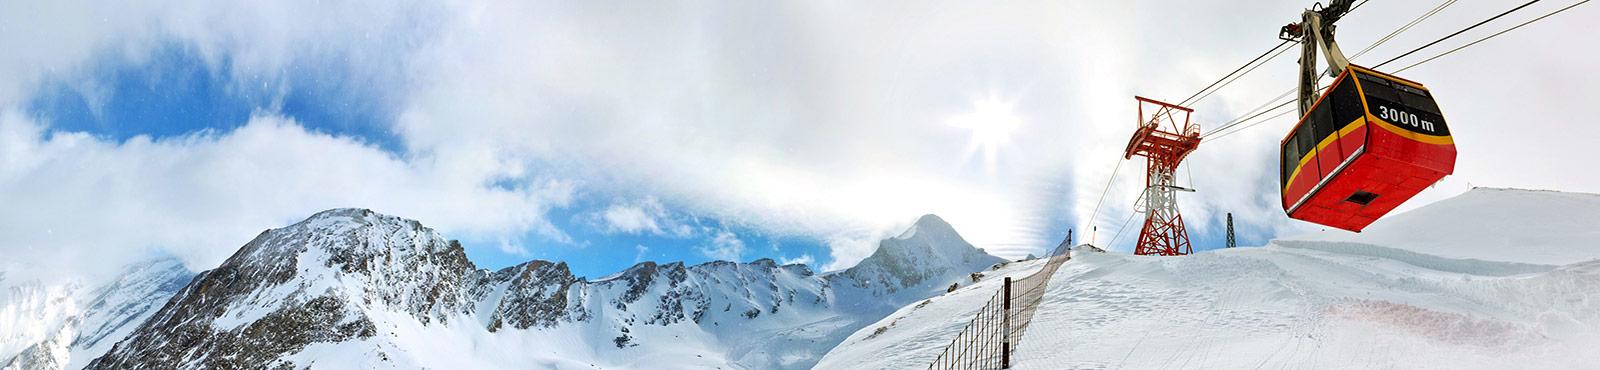 Best Ski Vacation Destinations Marquee